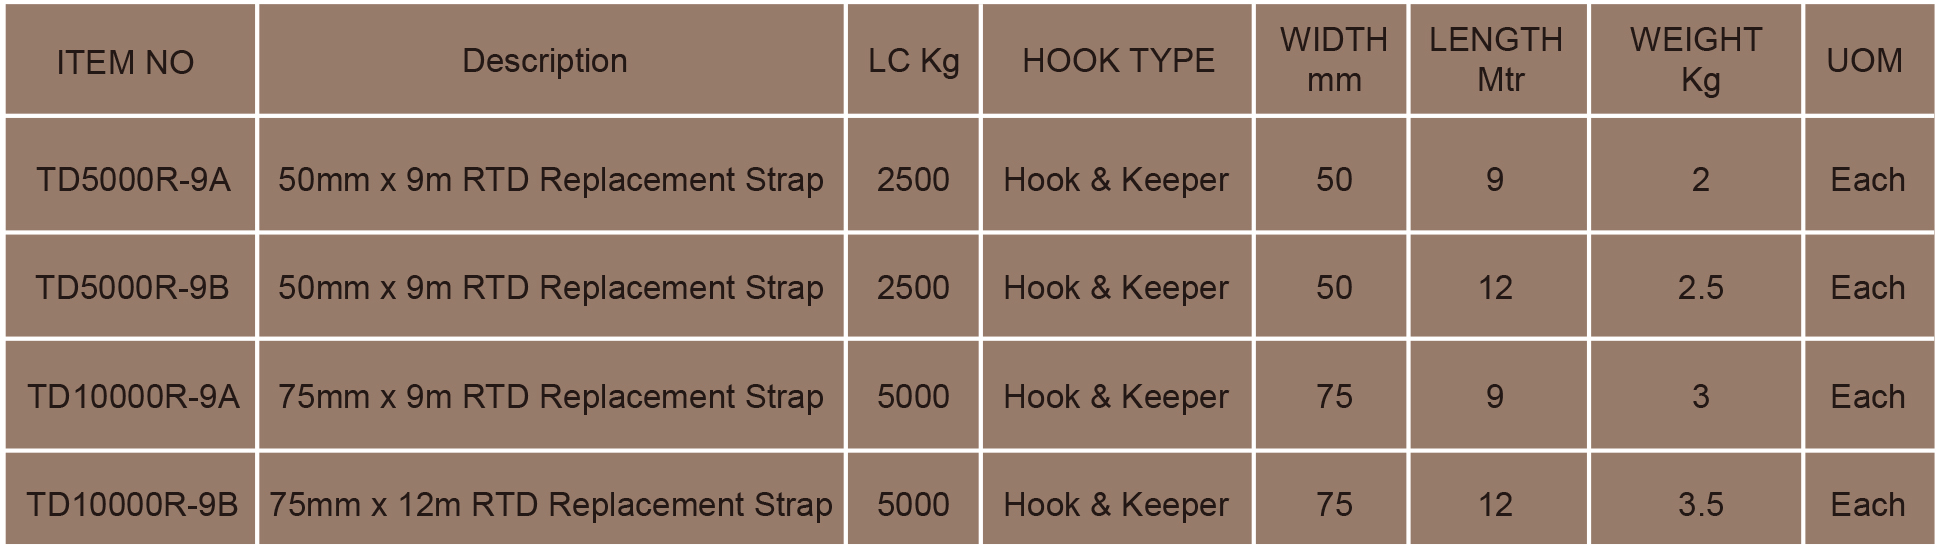 18- Standardowe poliestrowe paski wymienne z grzechotką, 9 m, LC 3000 kg